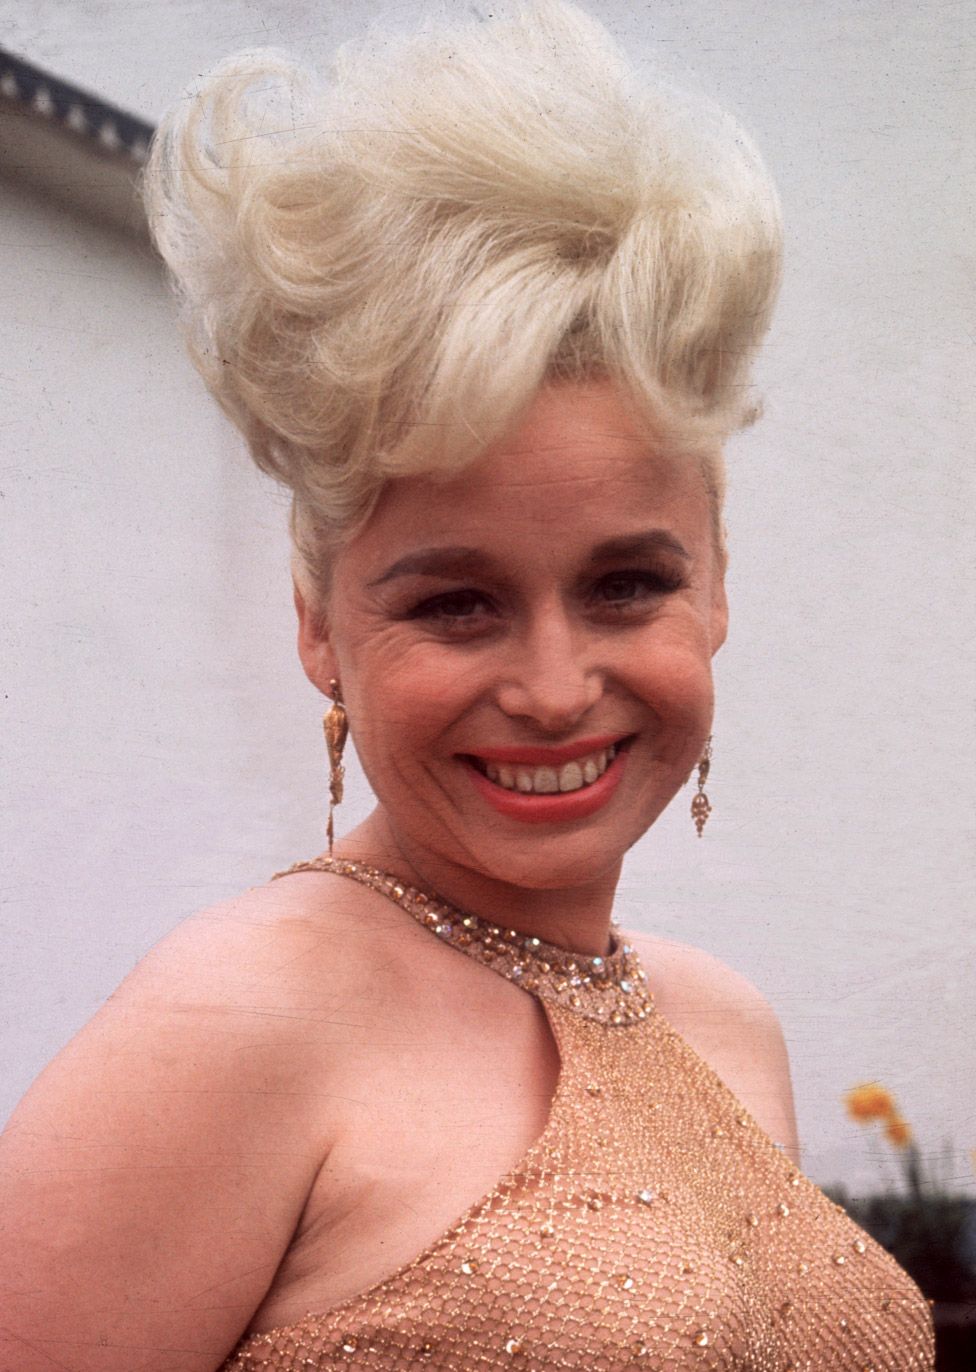 Barbara Windsor in 1965